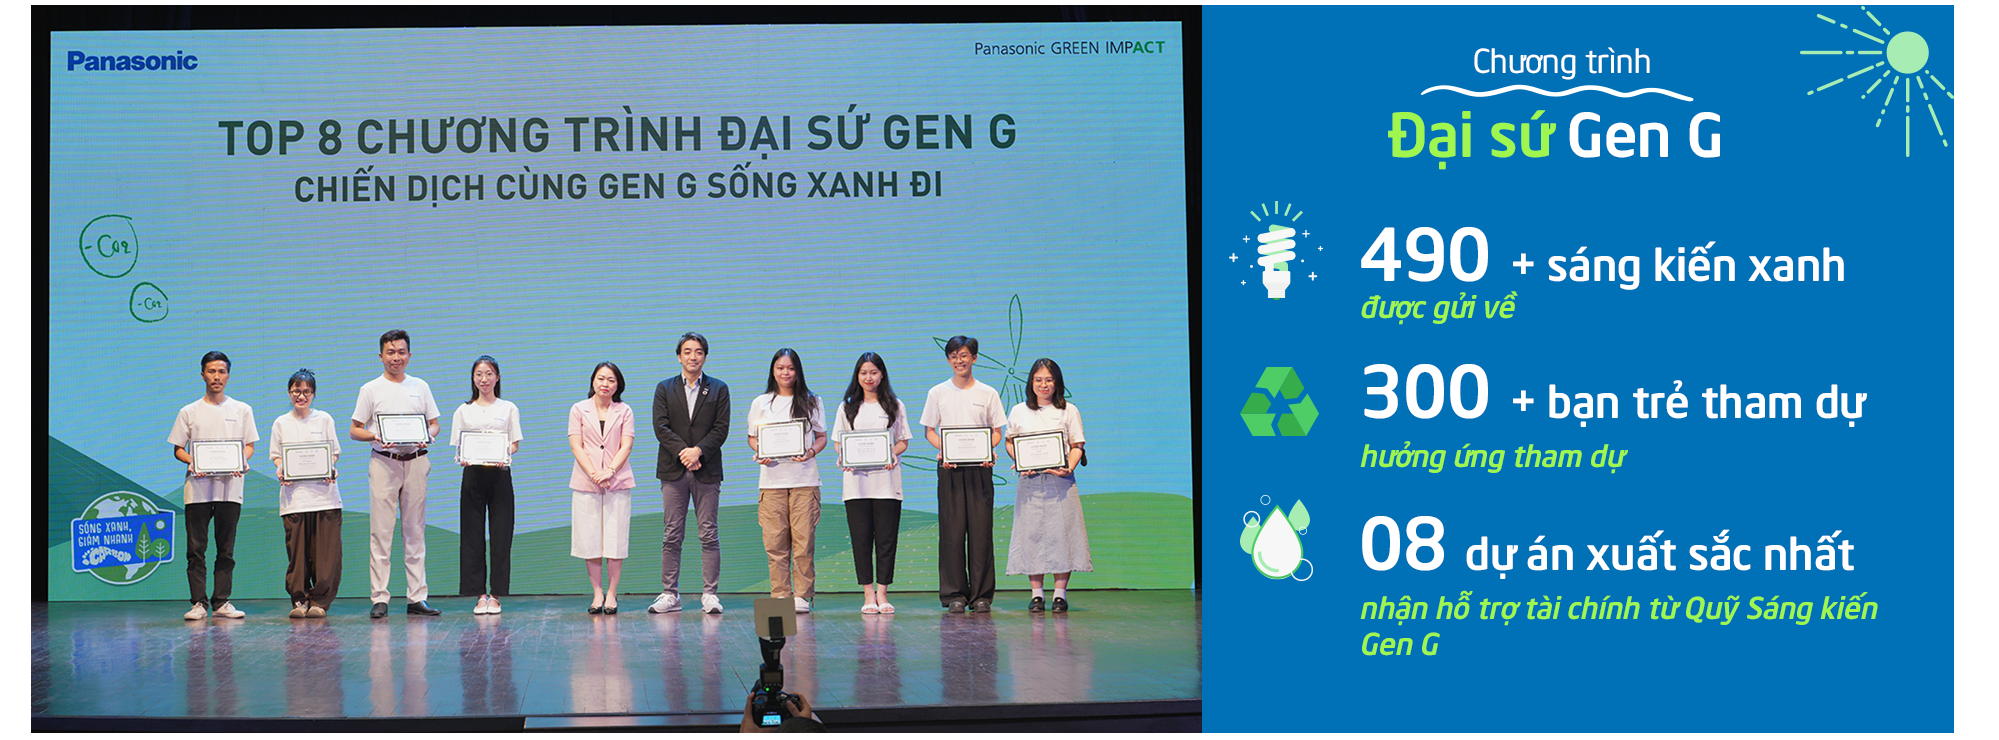 Panasonic cùng Gen G tạo tác động xanh vì một Việt Nam bền vững - Ảnh 10.